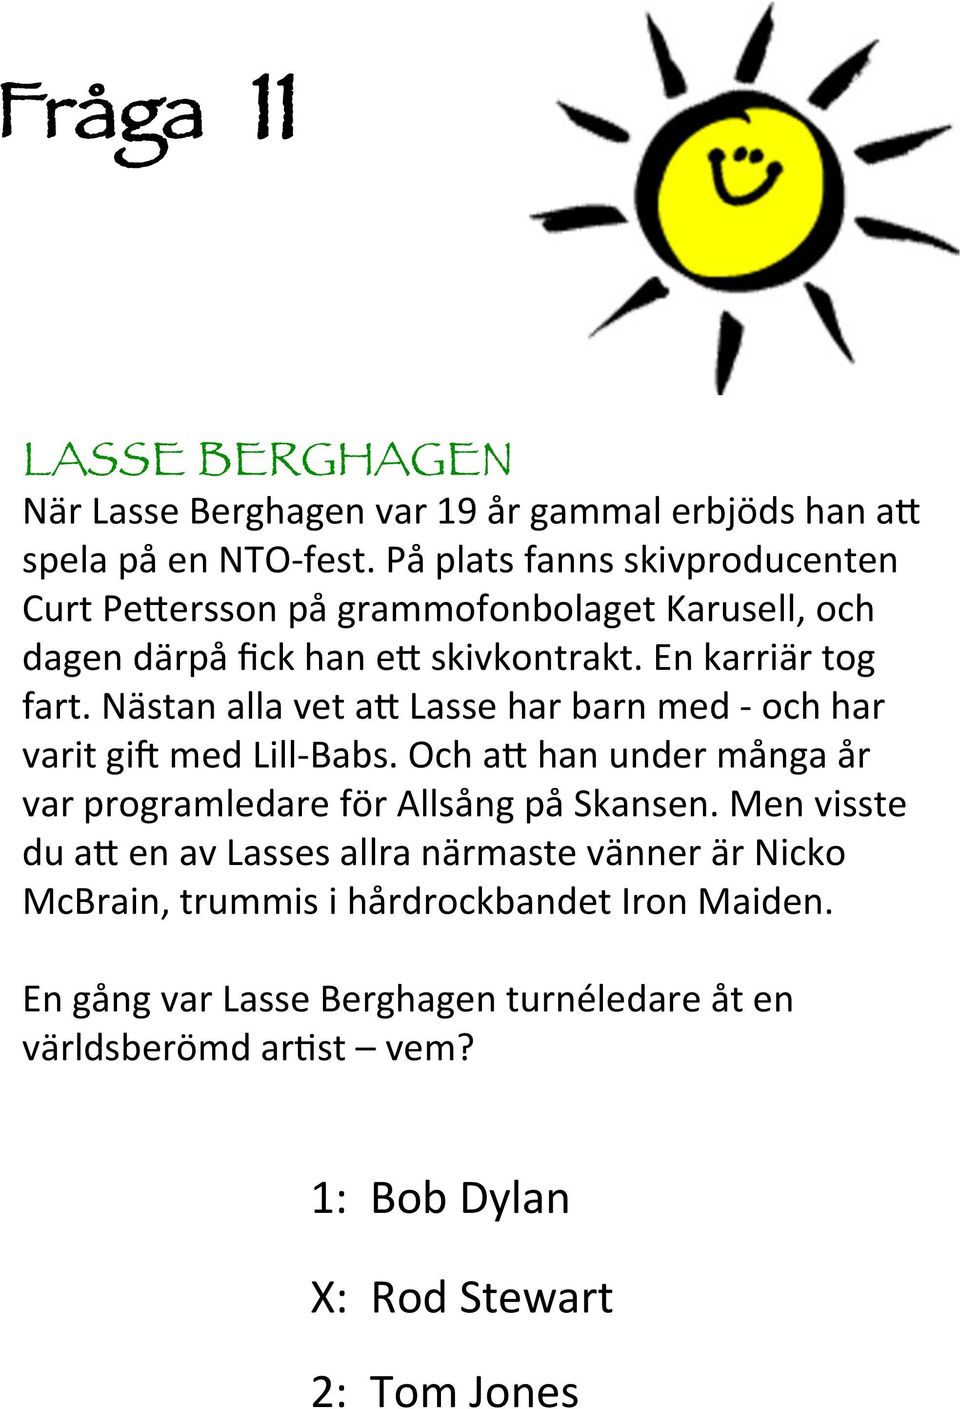 Nästan alla vet a9 Lasse har barn med - och har varit gij med Lill-Babs. Och a9 han under många år var programledare för Allsång på Skansen.